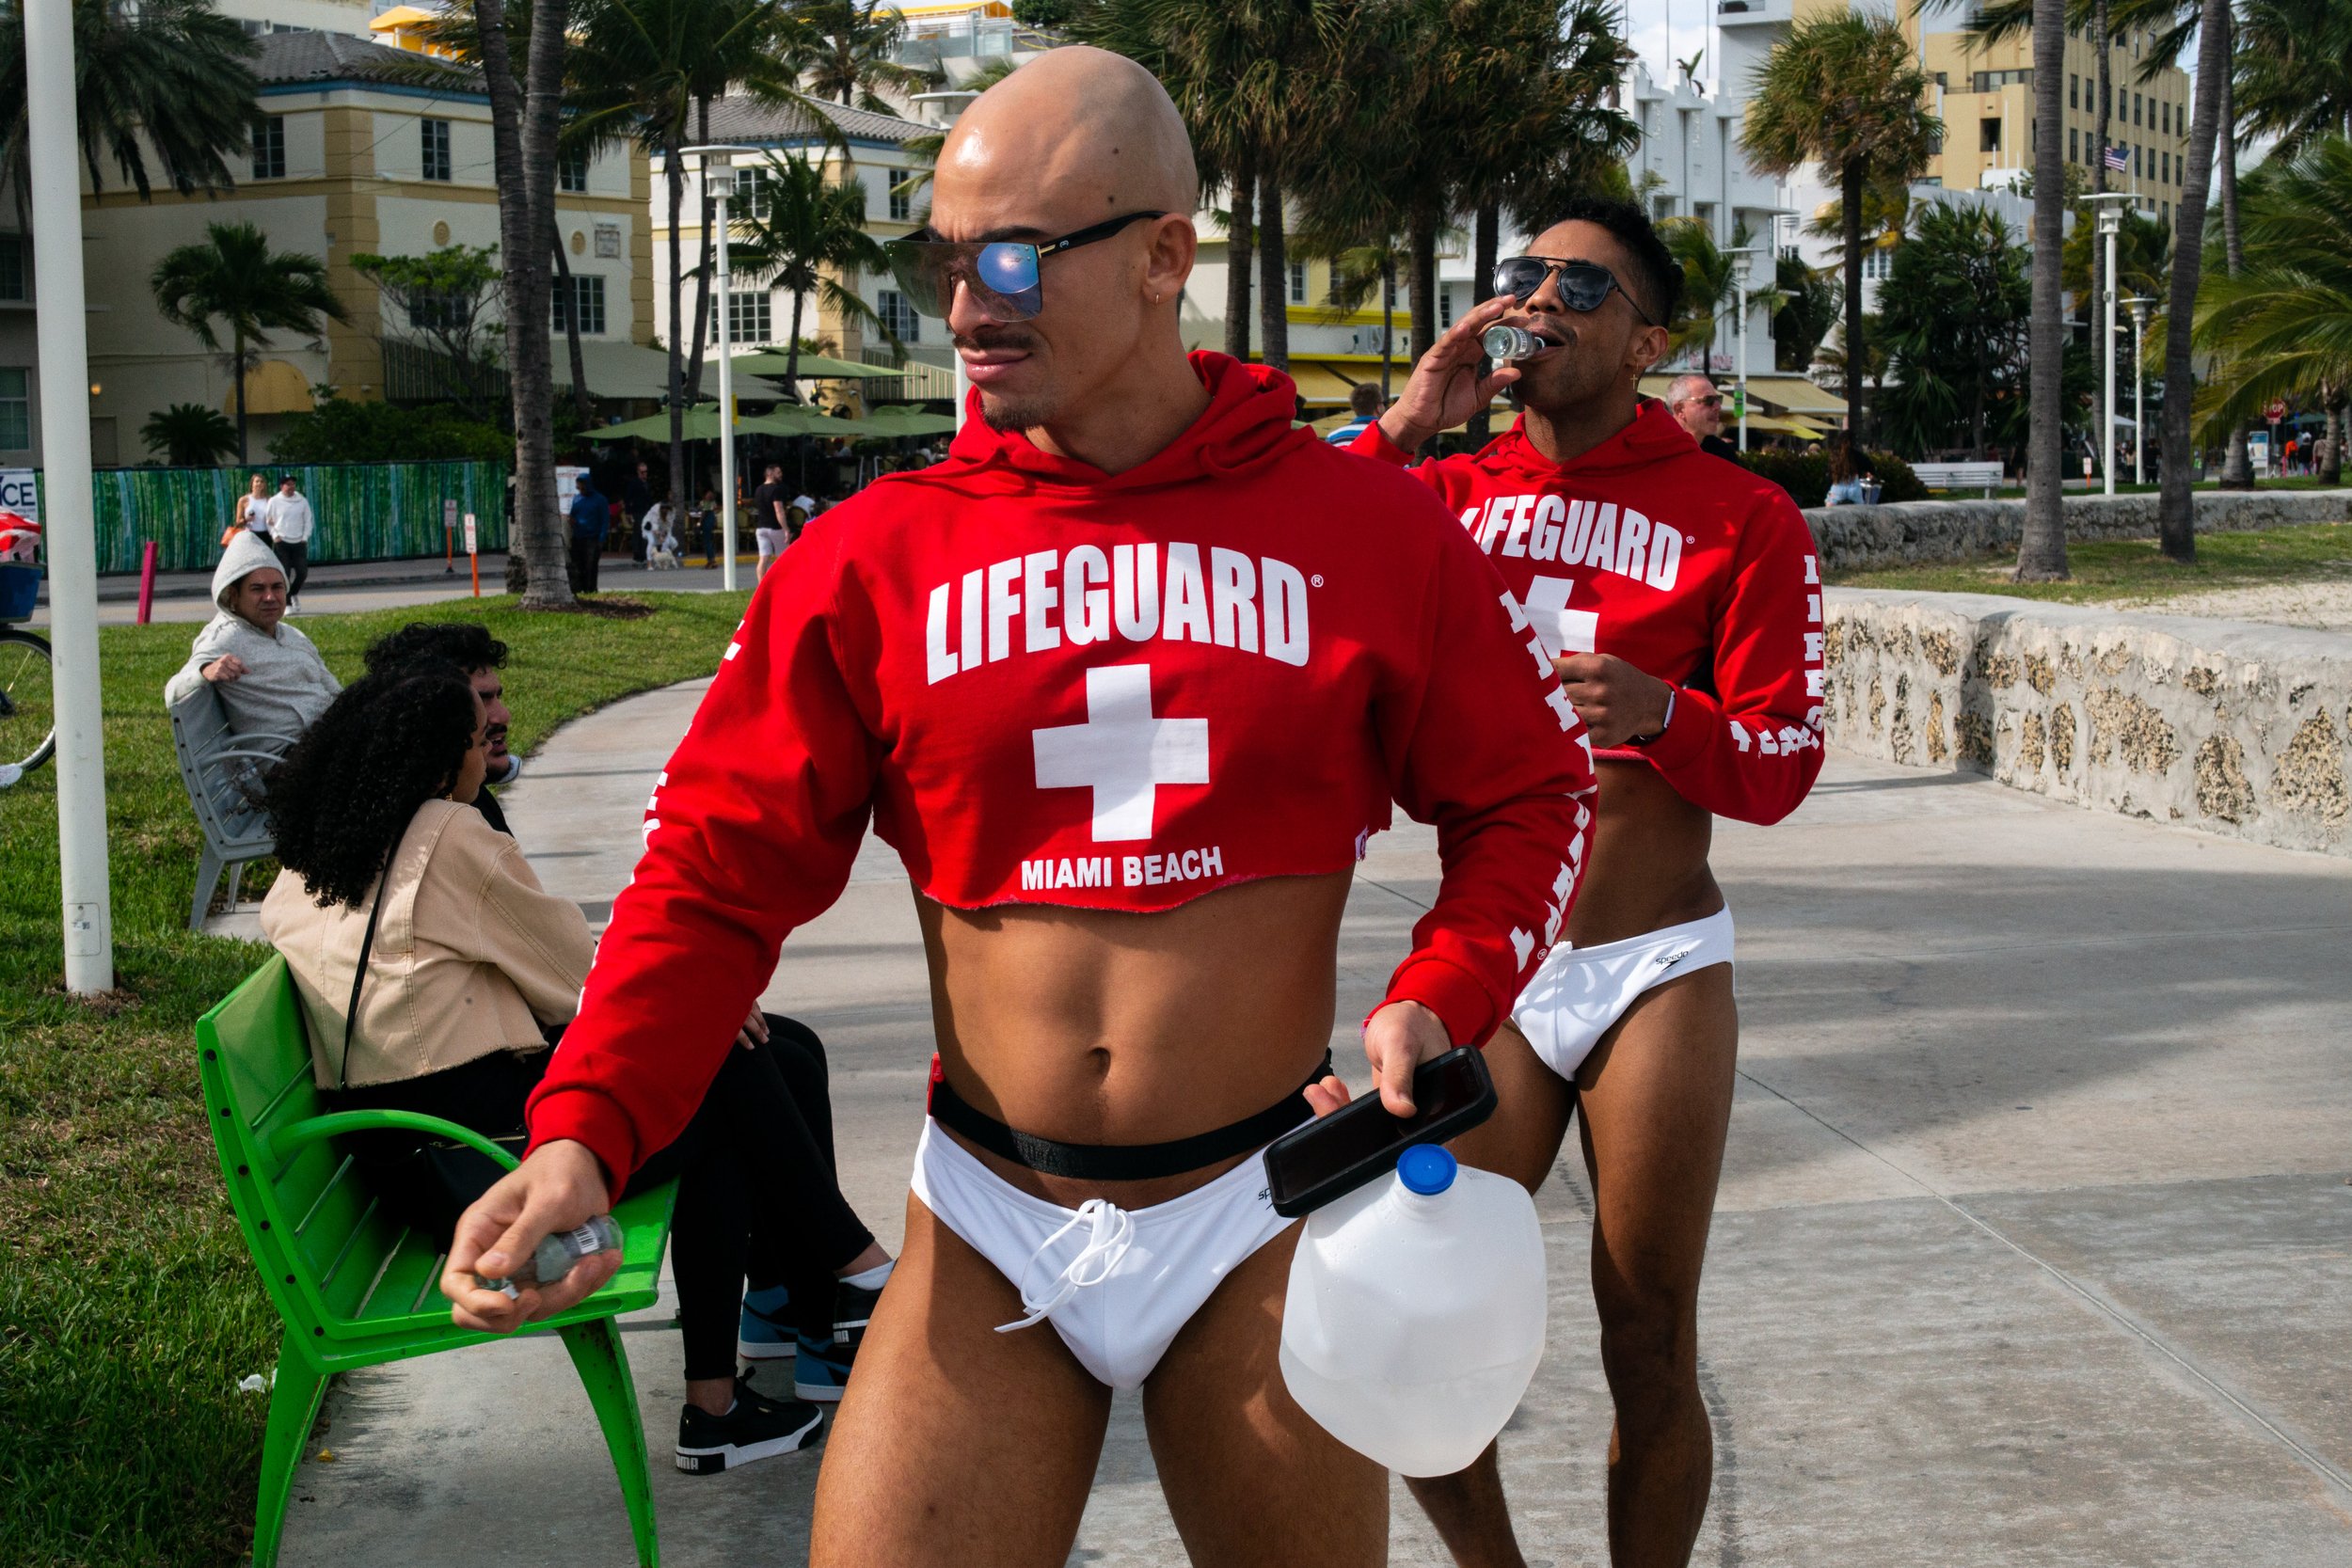 Lifeguard.jpg